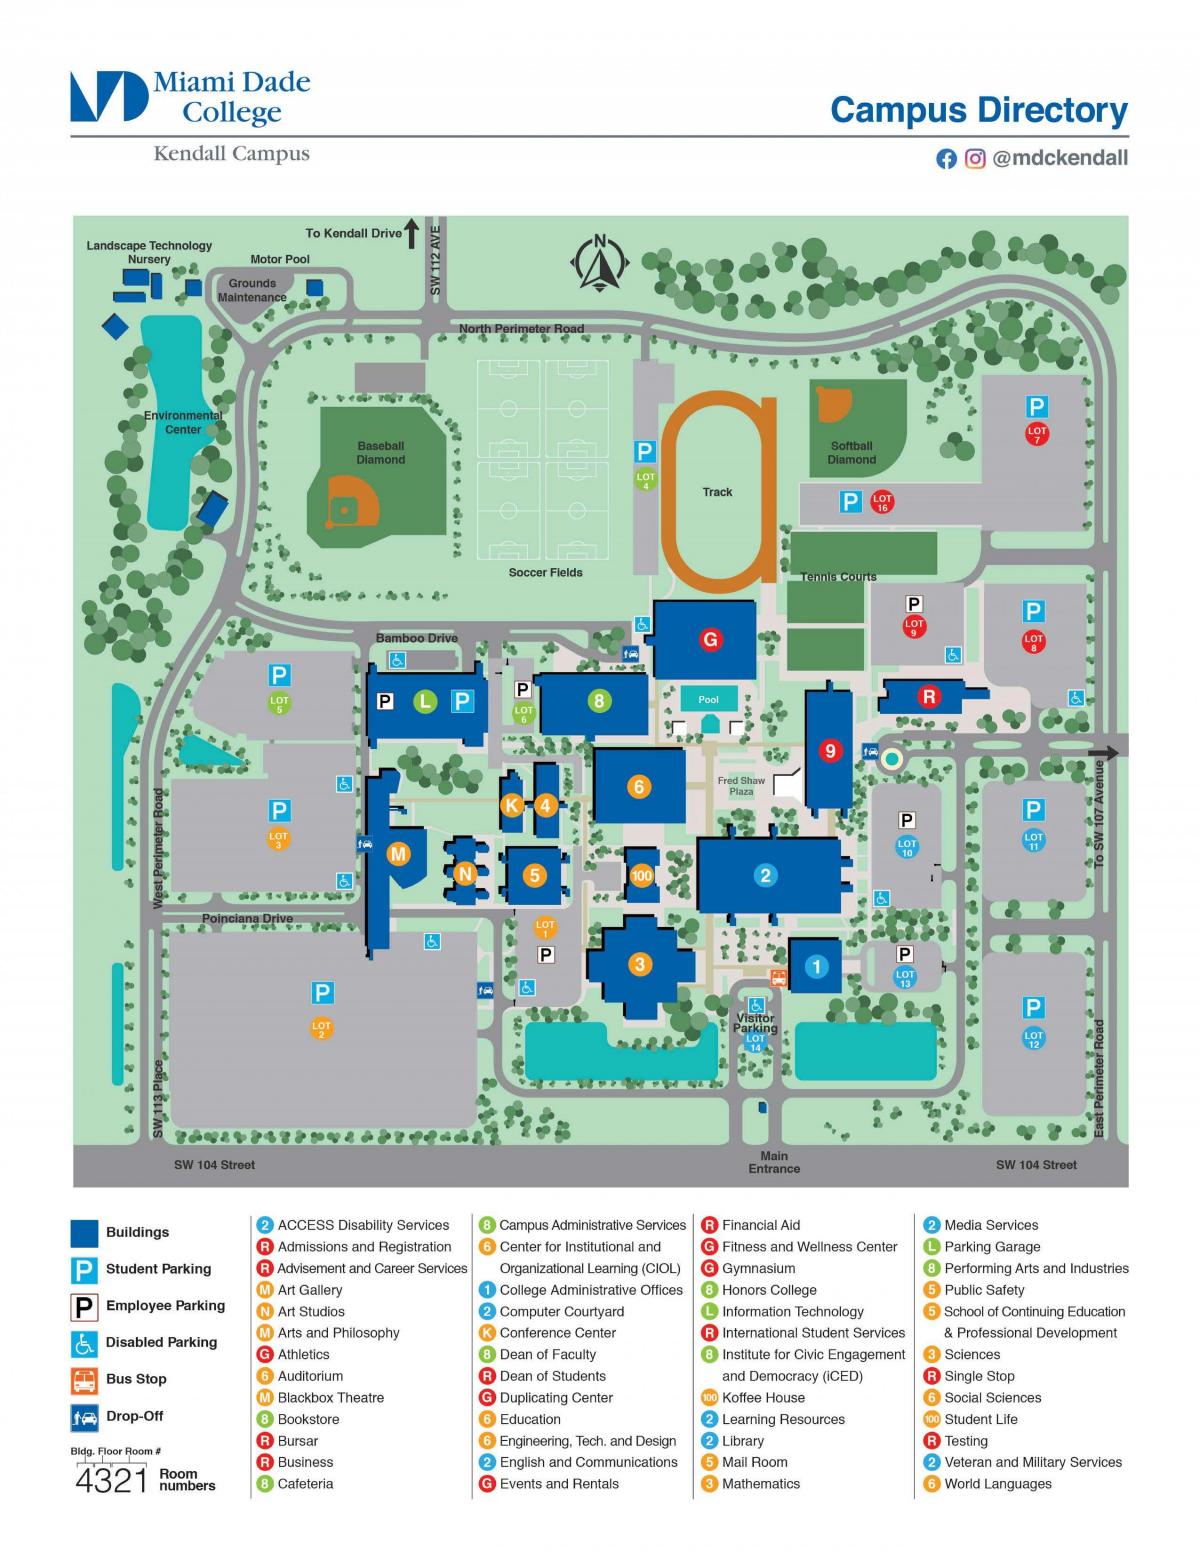 كلية ميامي دايد كيندال خريطة الحرم الجامعي